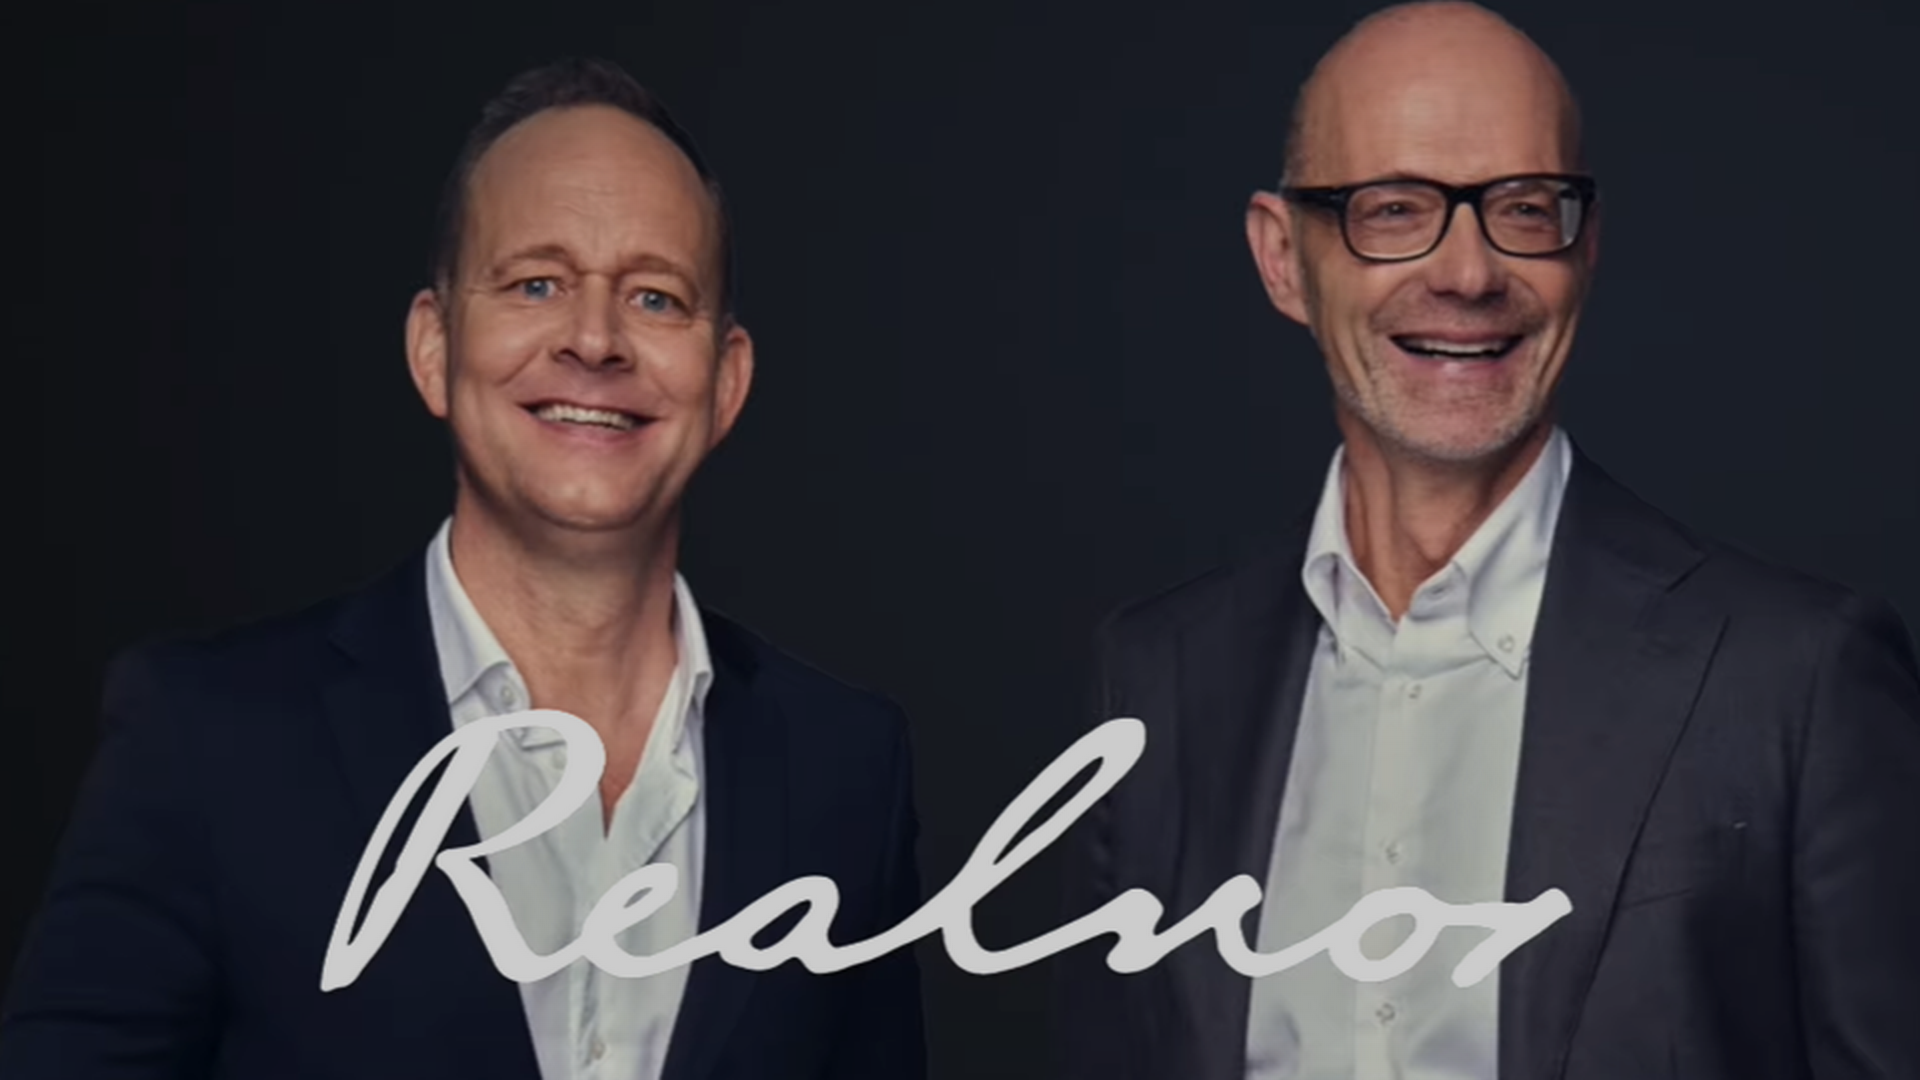 STYRER REALNOR: Jens Marius Andresen (CEO Forvaltning) og Patrick Tepfers (CEO Næringsmegling). | Foto: Realnor